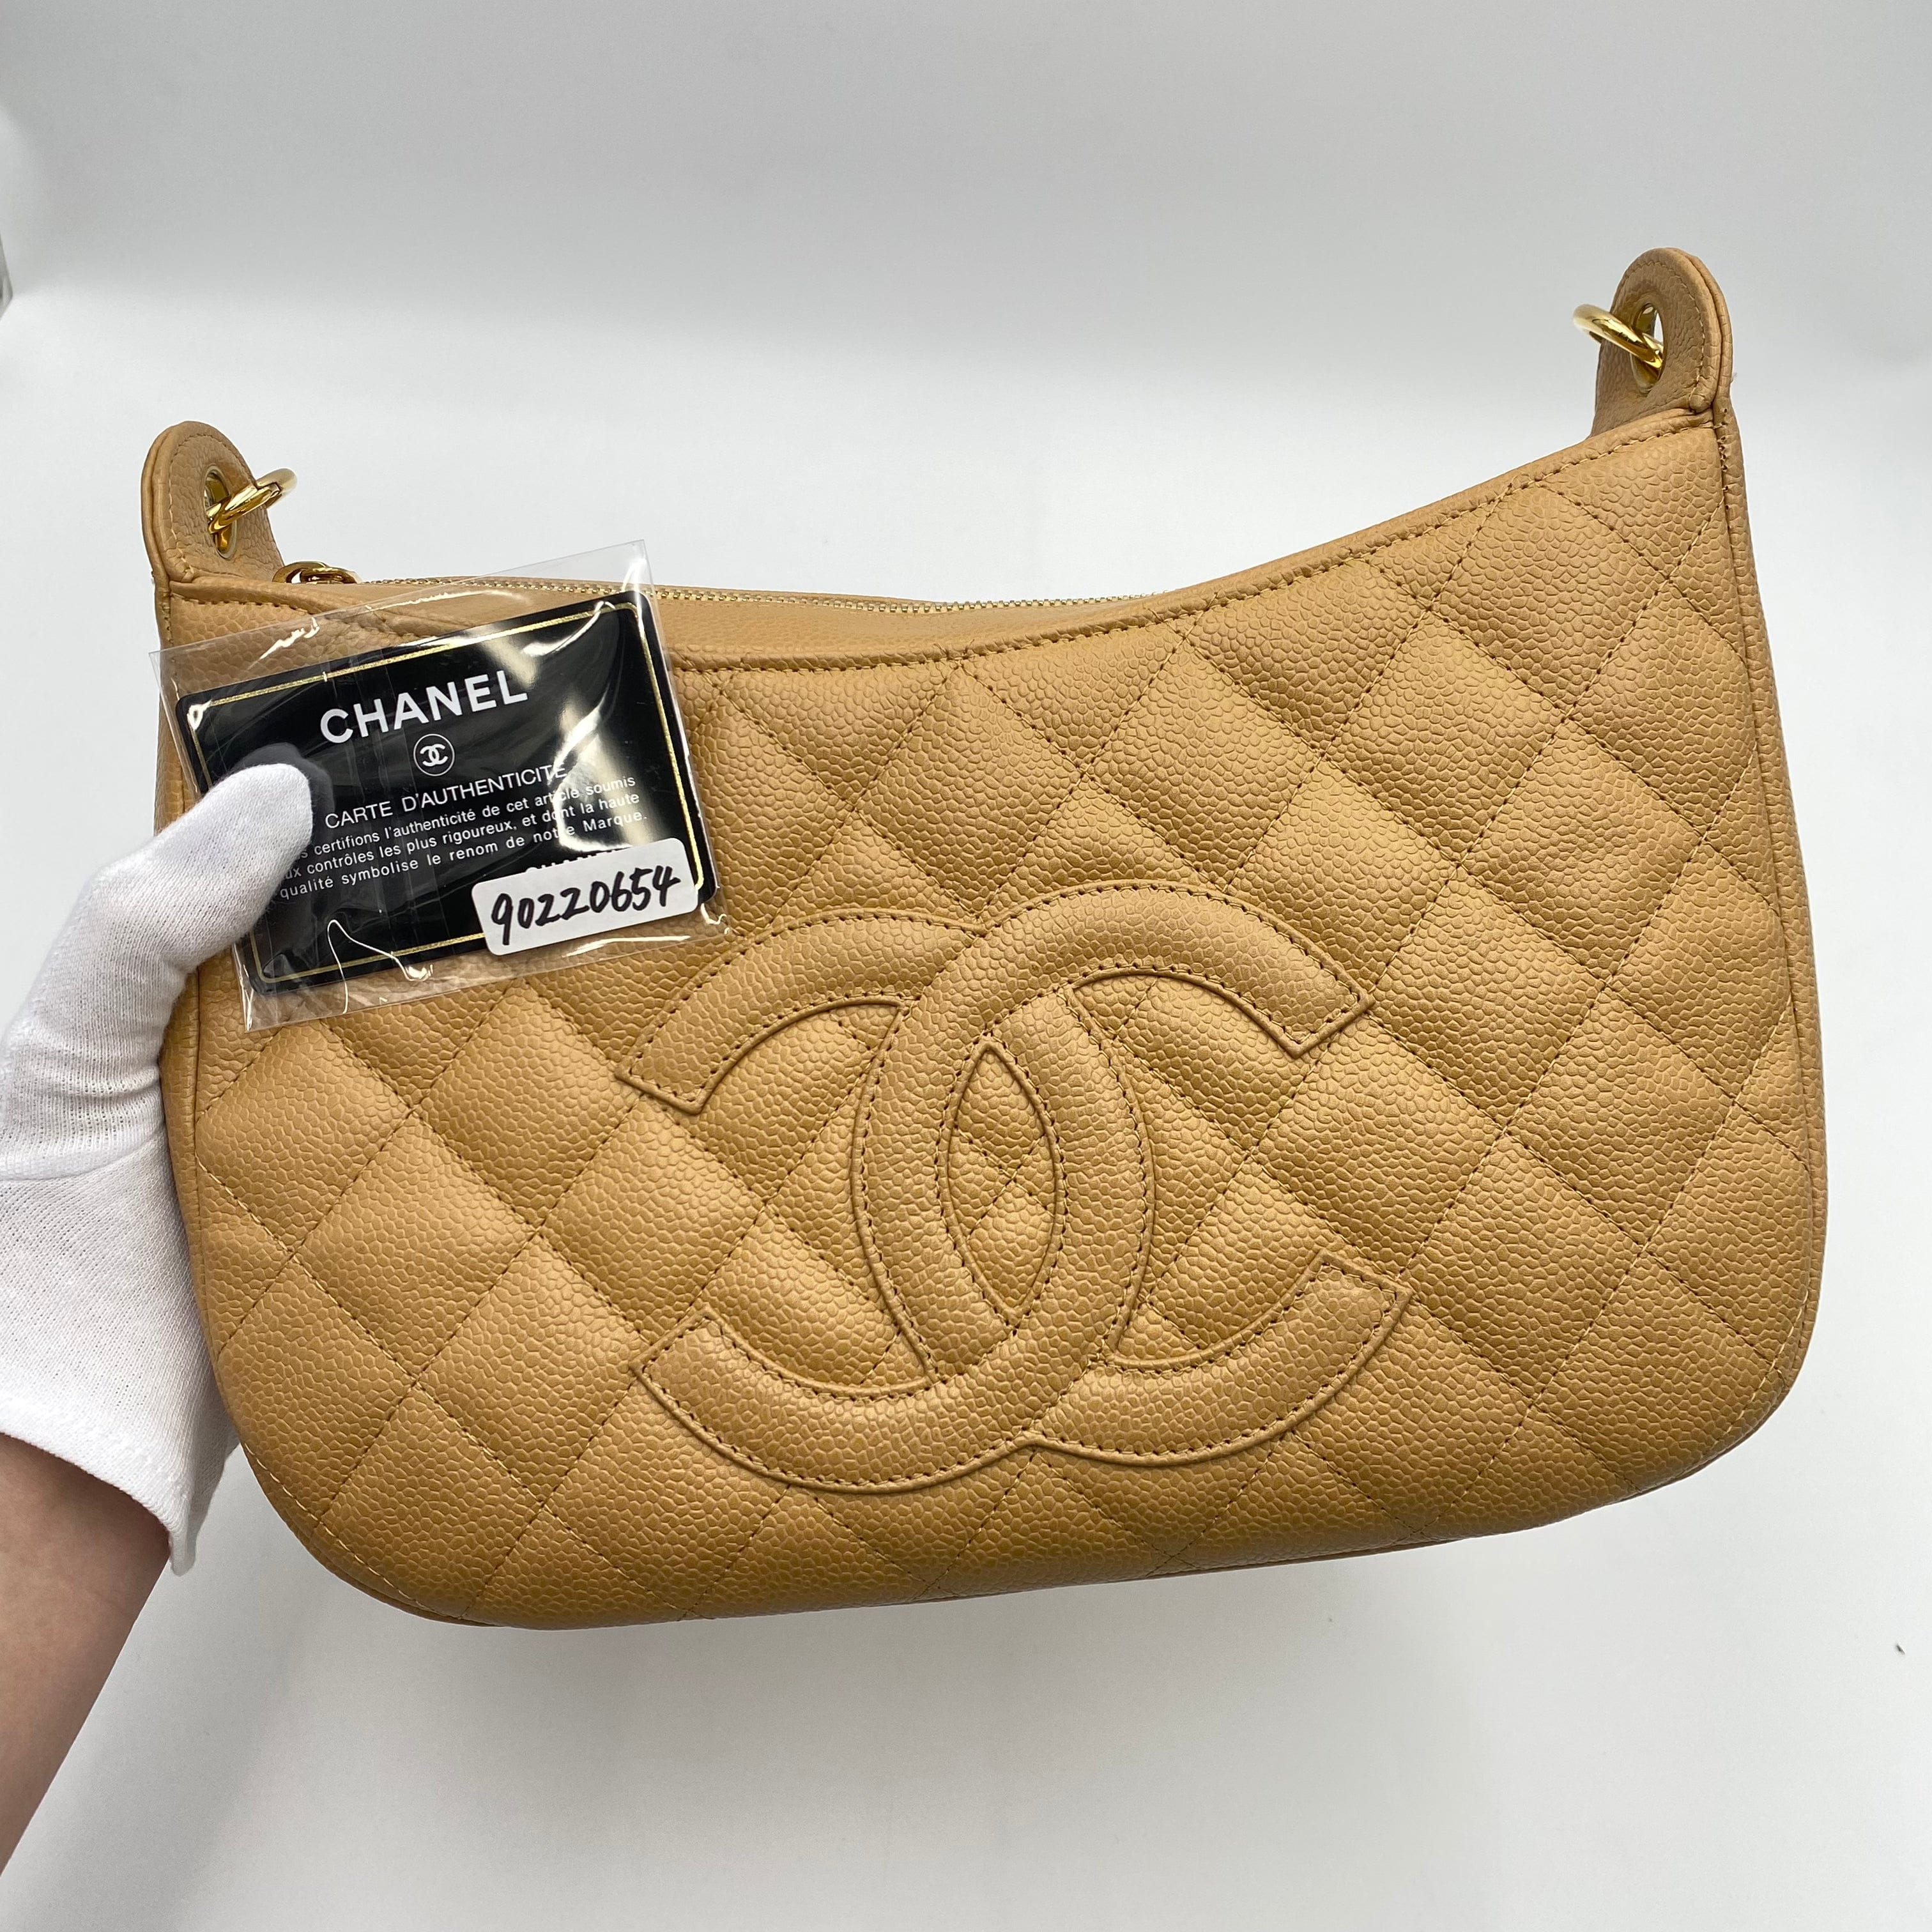 Chanel CHANEL VINTAGE HALF MOON ONE SHOULDER BAG BEIGE CAVIAR SKIN 90220654